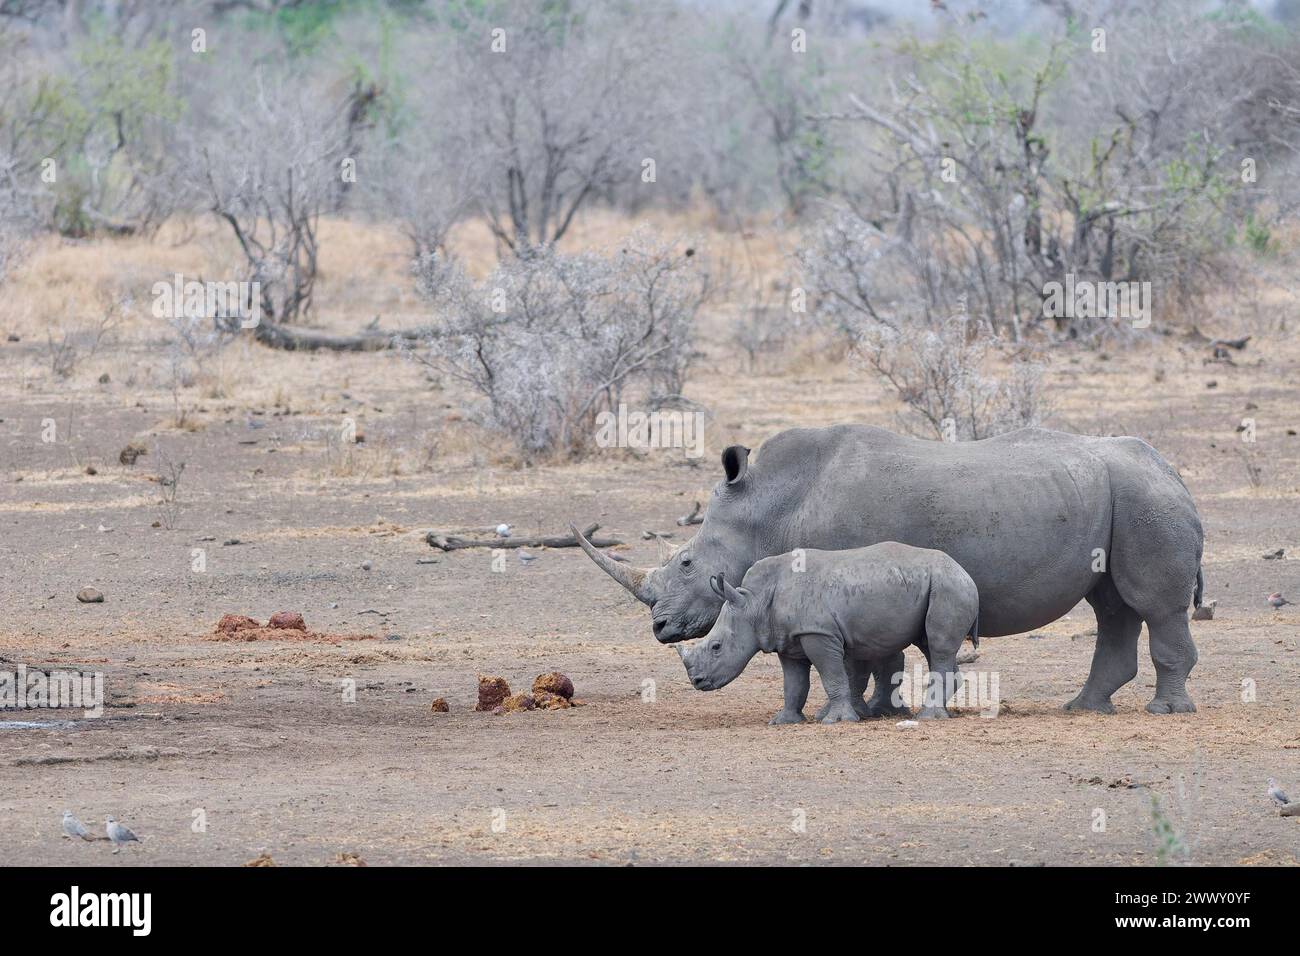 Rinocerontes blancos del sur (Ceratotherium simum simum), hembra adulta con rinoceronte joven temeroso, de pie en el pozo de agua, esperando a beber, alerta, Foto de stock